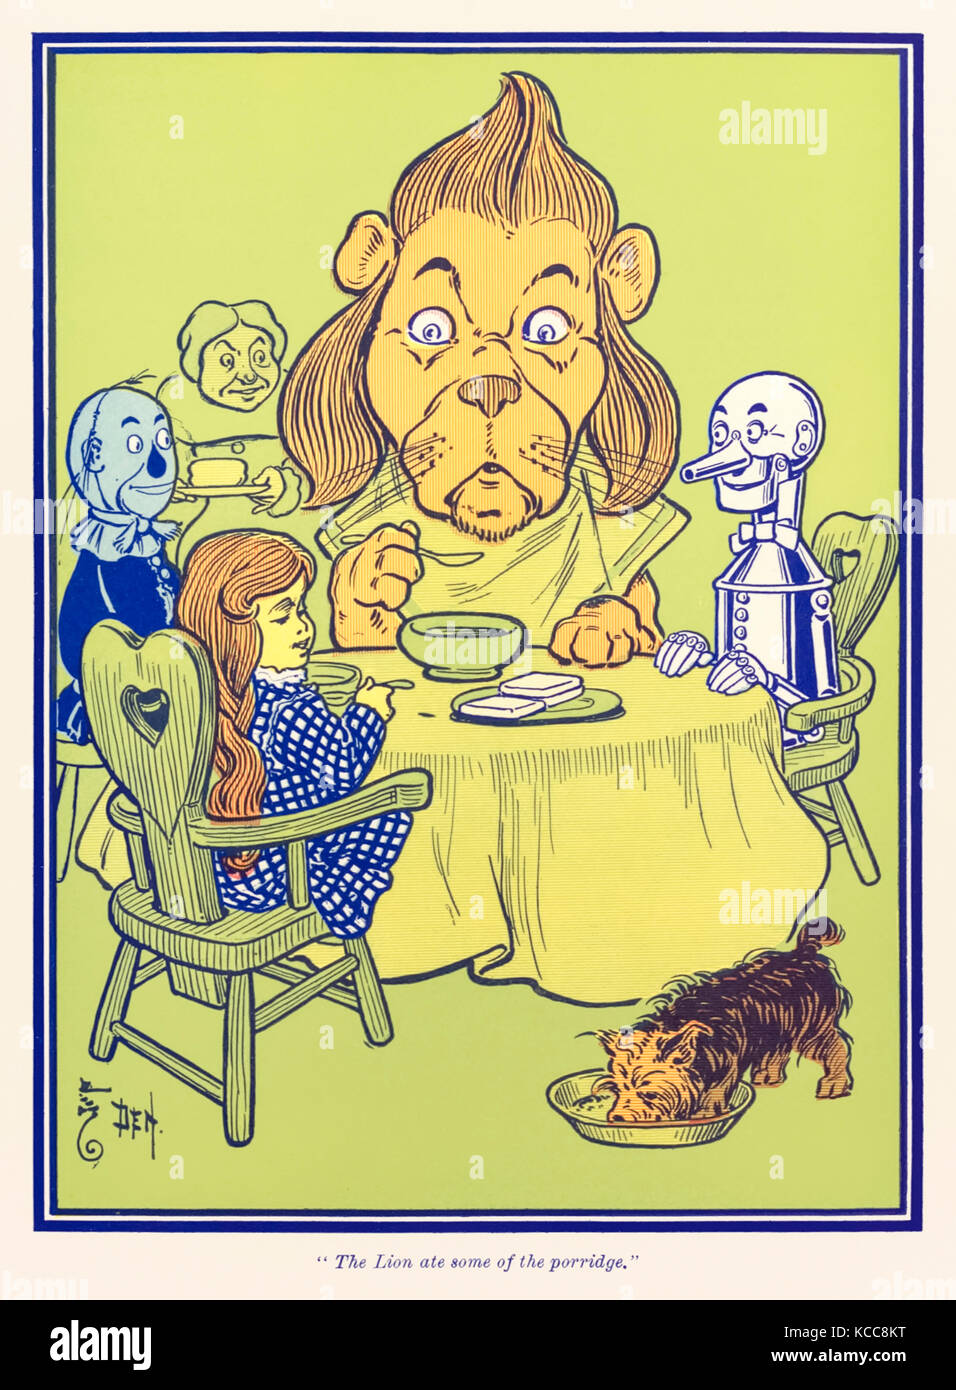 "Il Leone mangiato del porridge." da "Wonderful Wizard of Oz' da L. Frank Baum (1856-1919) con foto da W. W. Denslow (1856-1915). Vedere ulteriori informazioni qui di seguito. Foto Stock